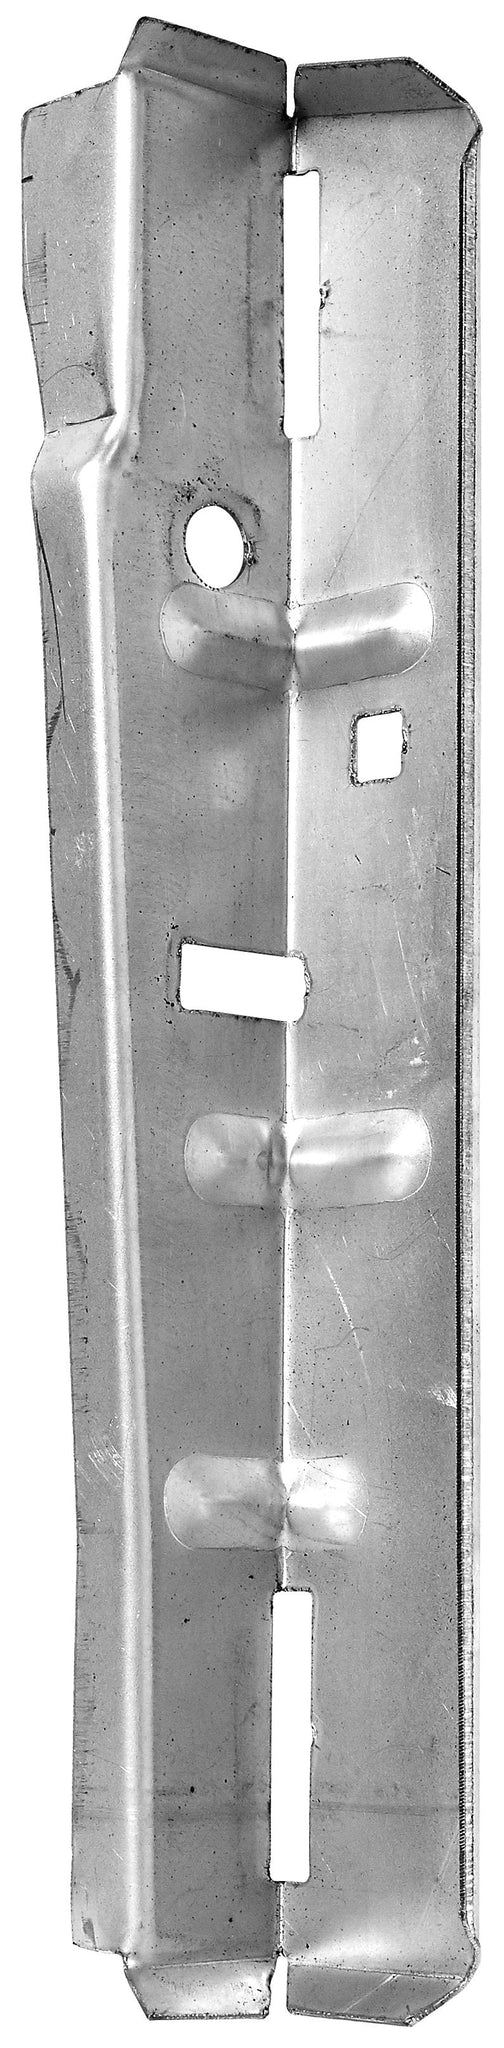 Escort MK1 Inner Door Jamb Hinge Support R/H 25-16-40-6